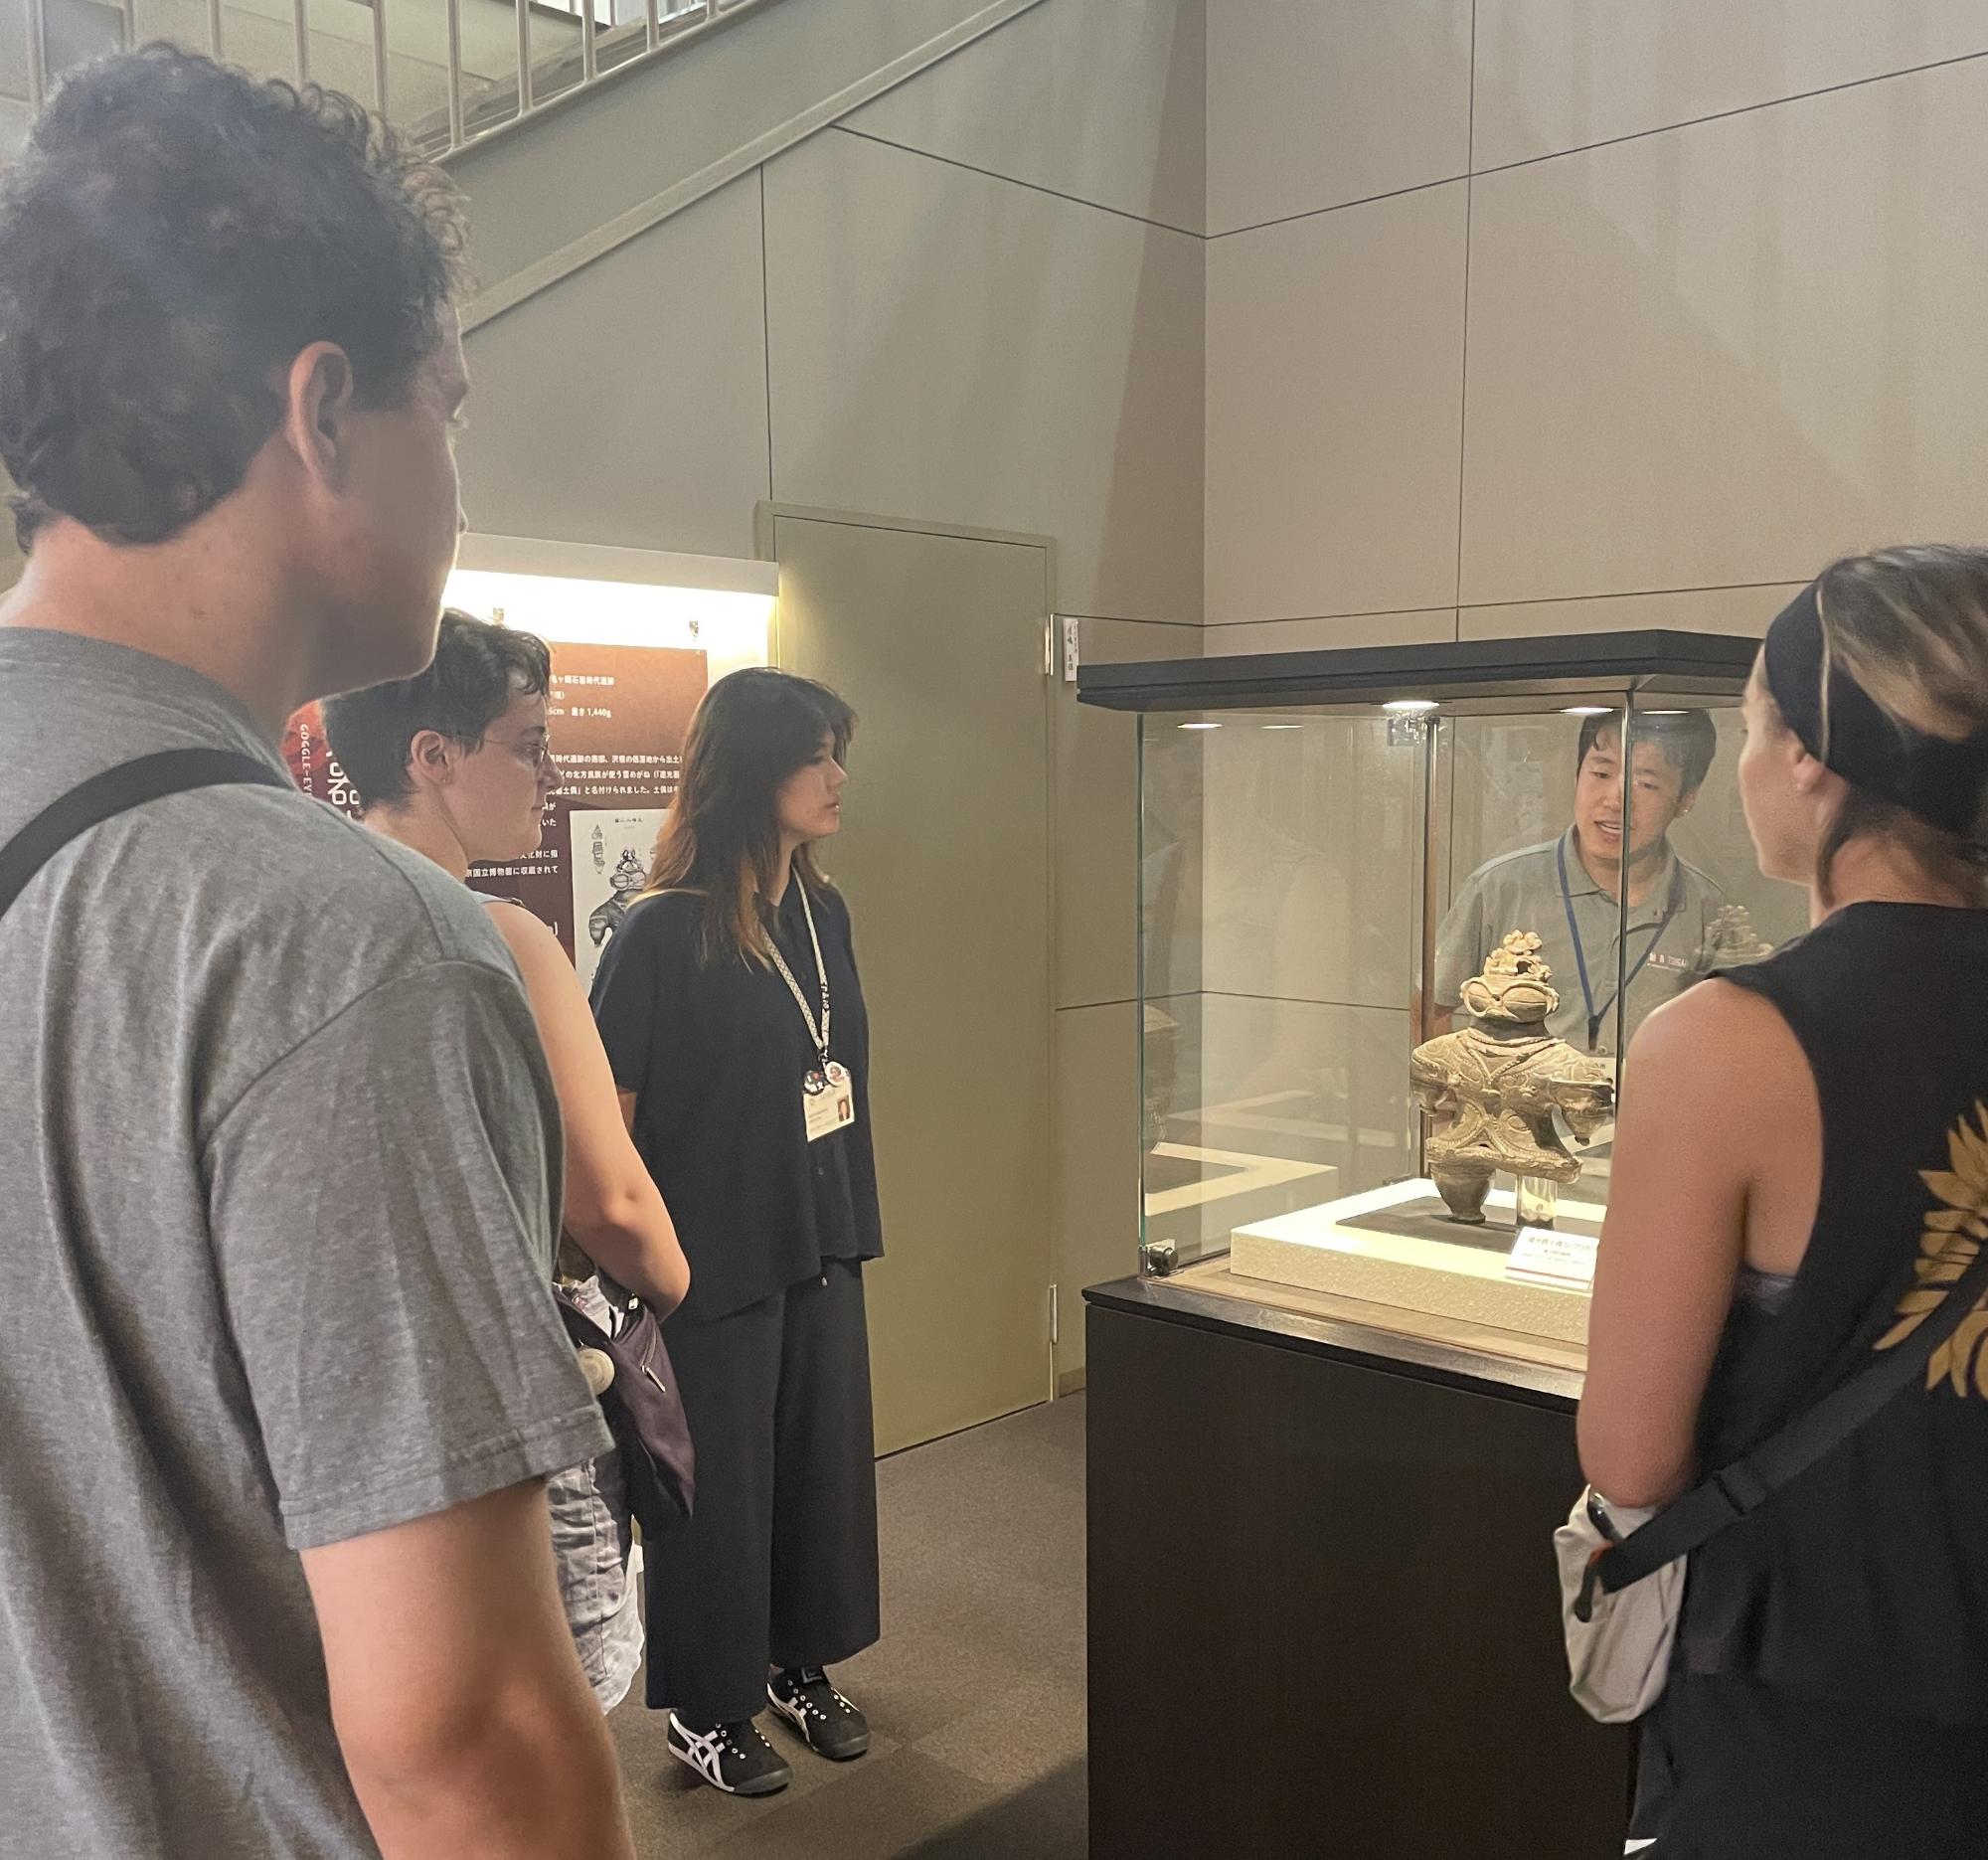 縄文住居展示資料館カルコ内にある縄文土器の展示品の前で関係者が訪問団に向けて説明をしているツアーの様子を撮影した写真